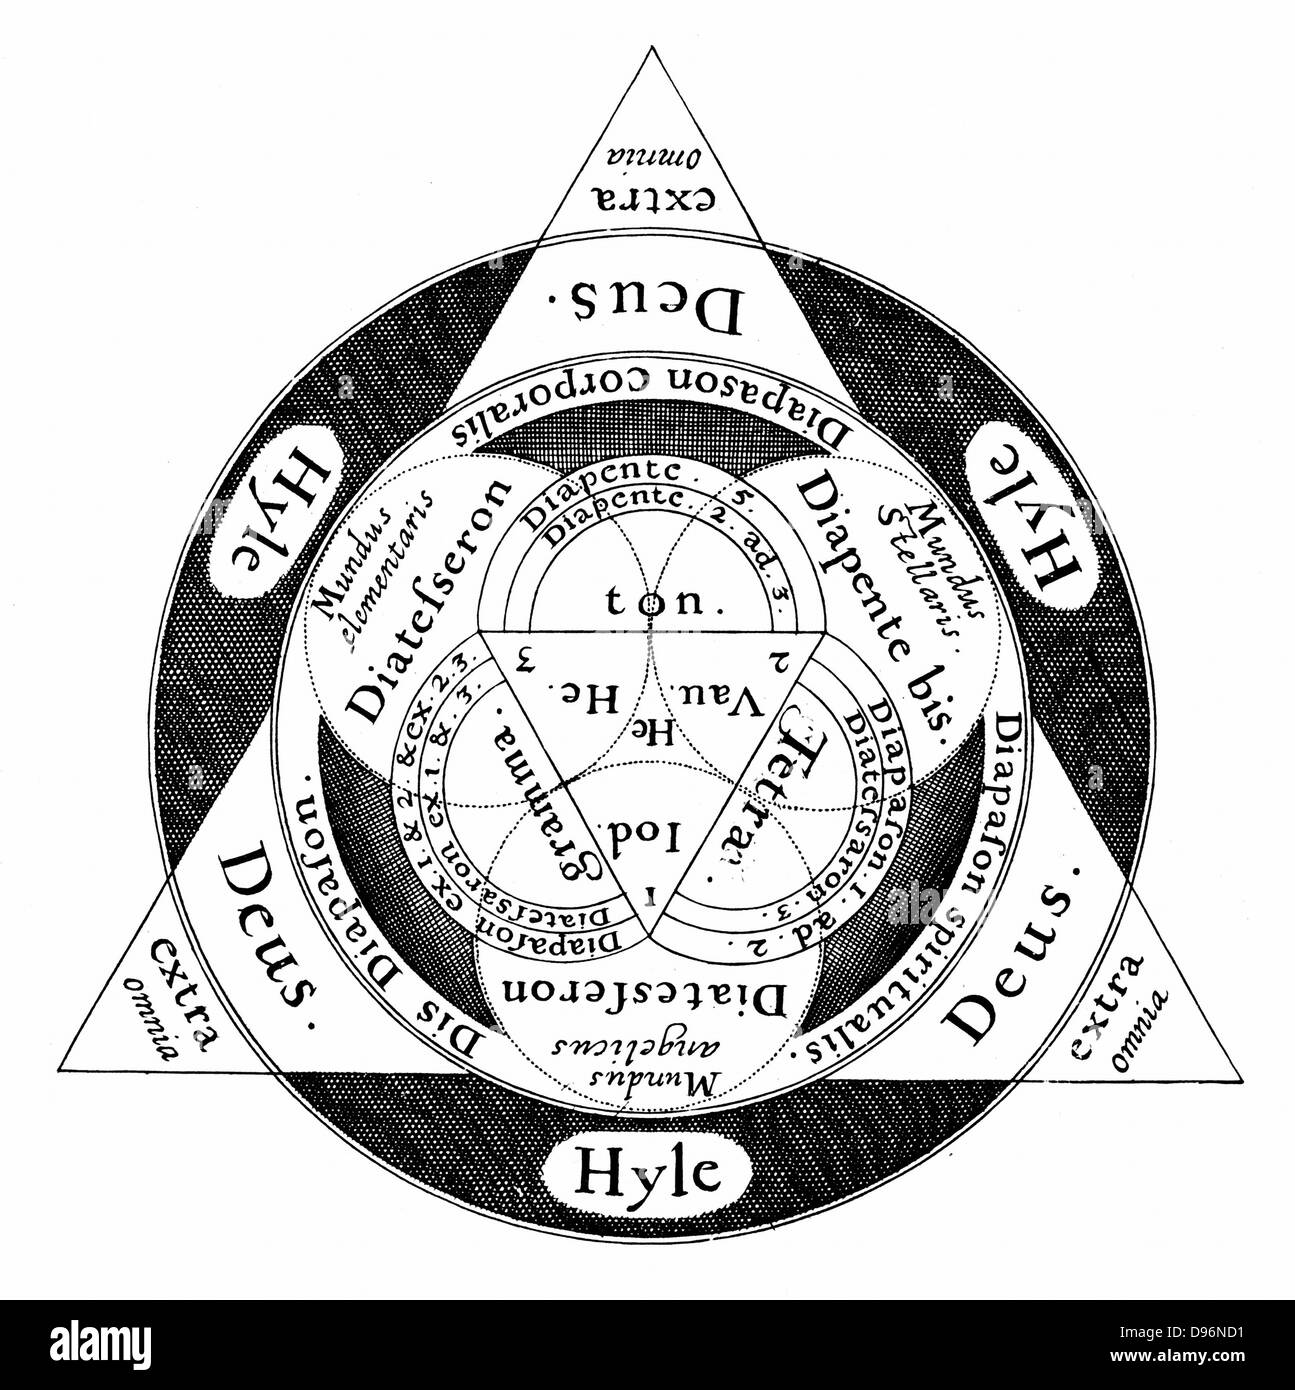 La divina armonia del microcosmo e la macrososm secondo l'ermetica e Cabalistic insegnamento. Dio è sempre al vertice del triangolo. Da Robert Fludd 'Ultriusque cosmi... historia, Oppenheim, 1617-1619. Incisione Foto Stock